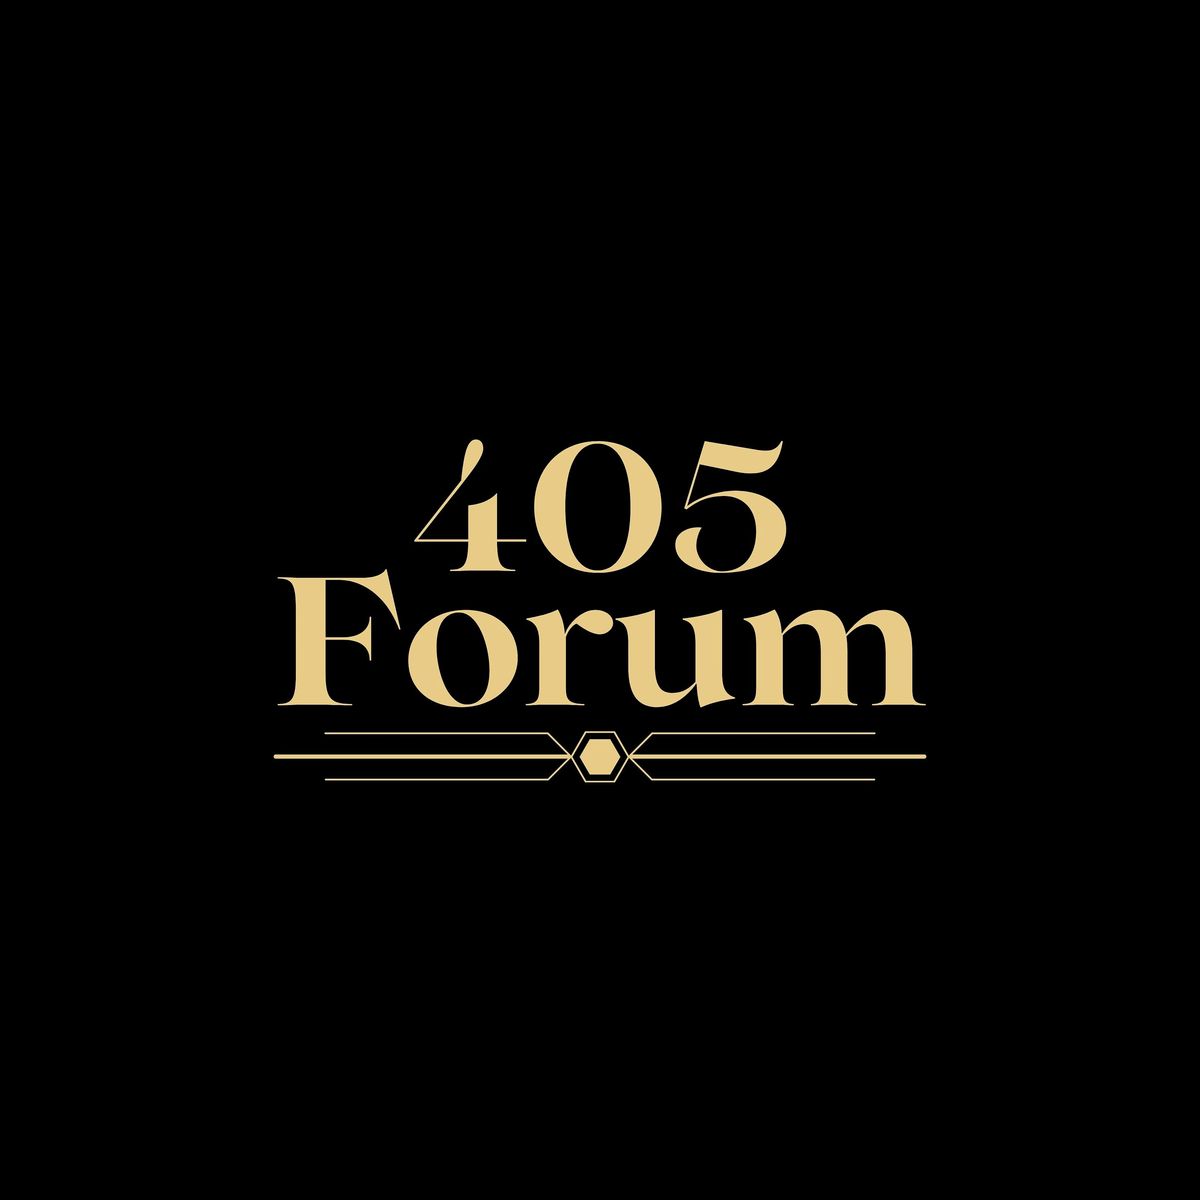 405 Forum